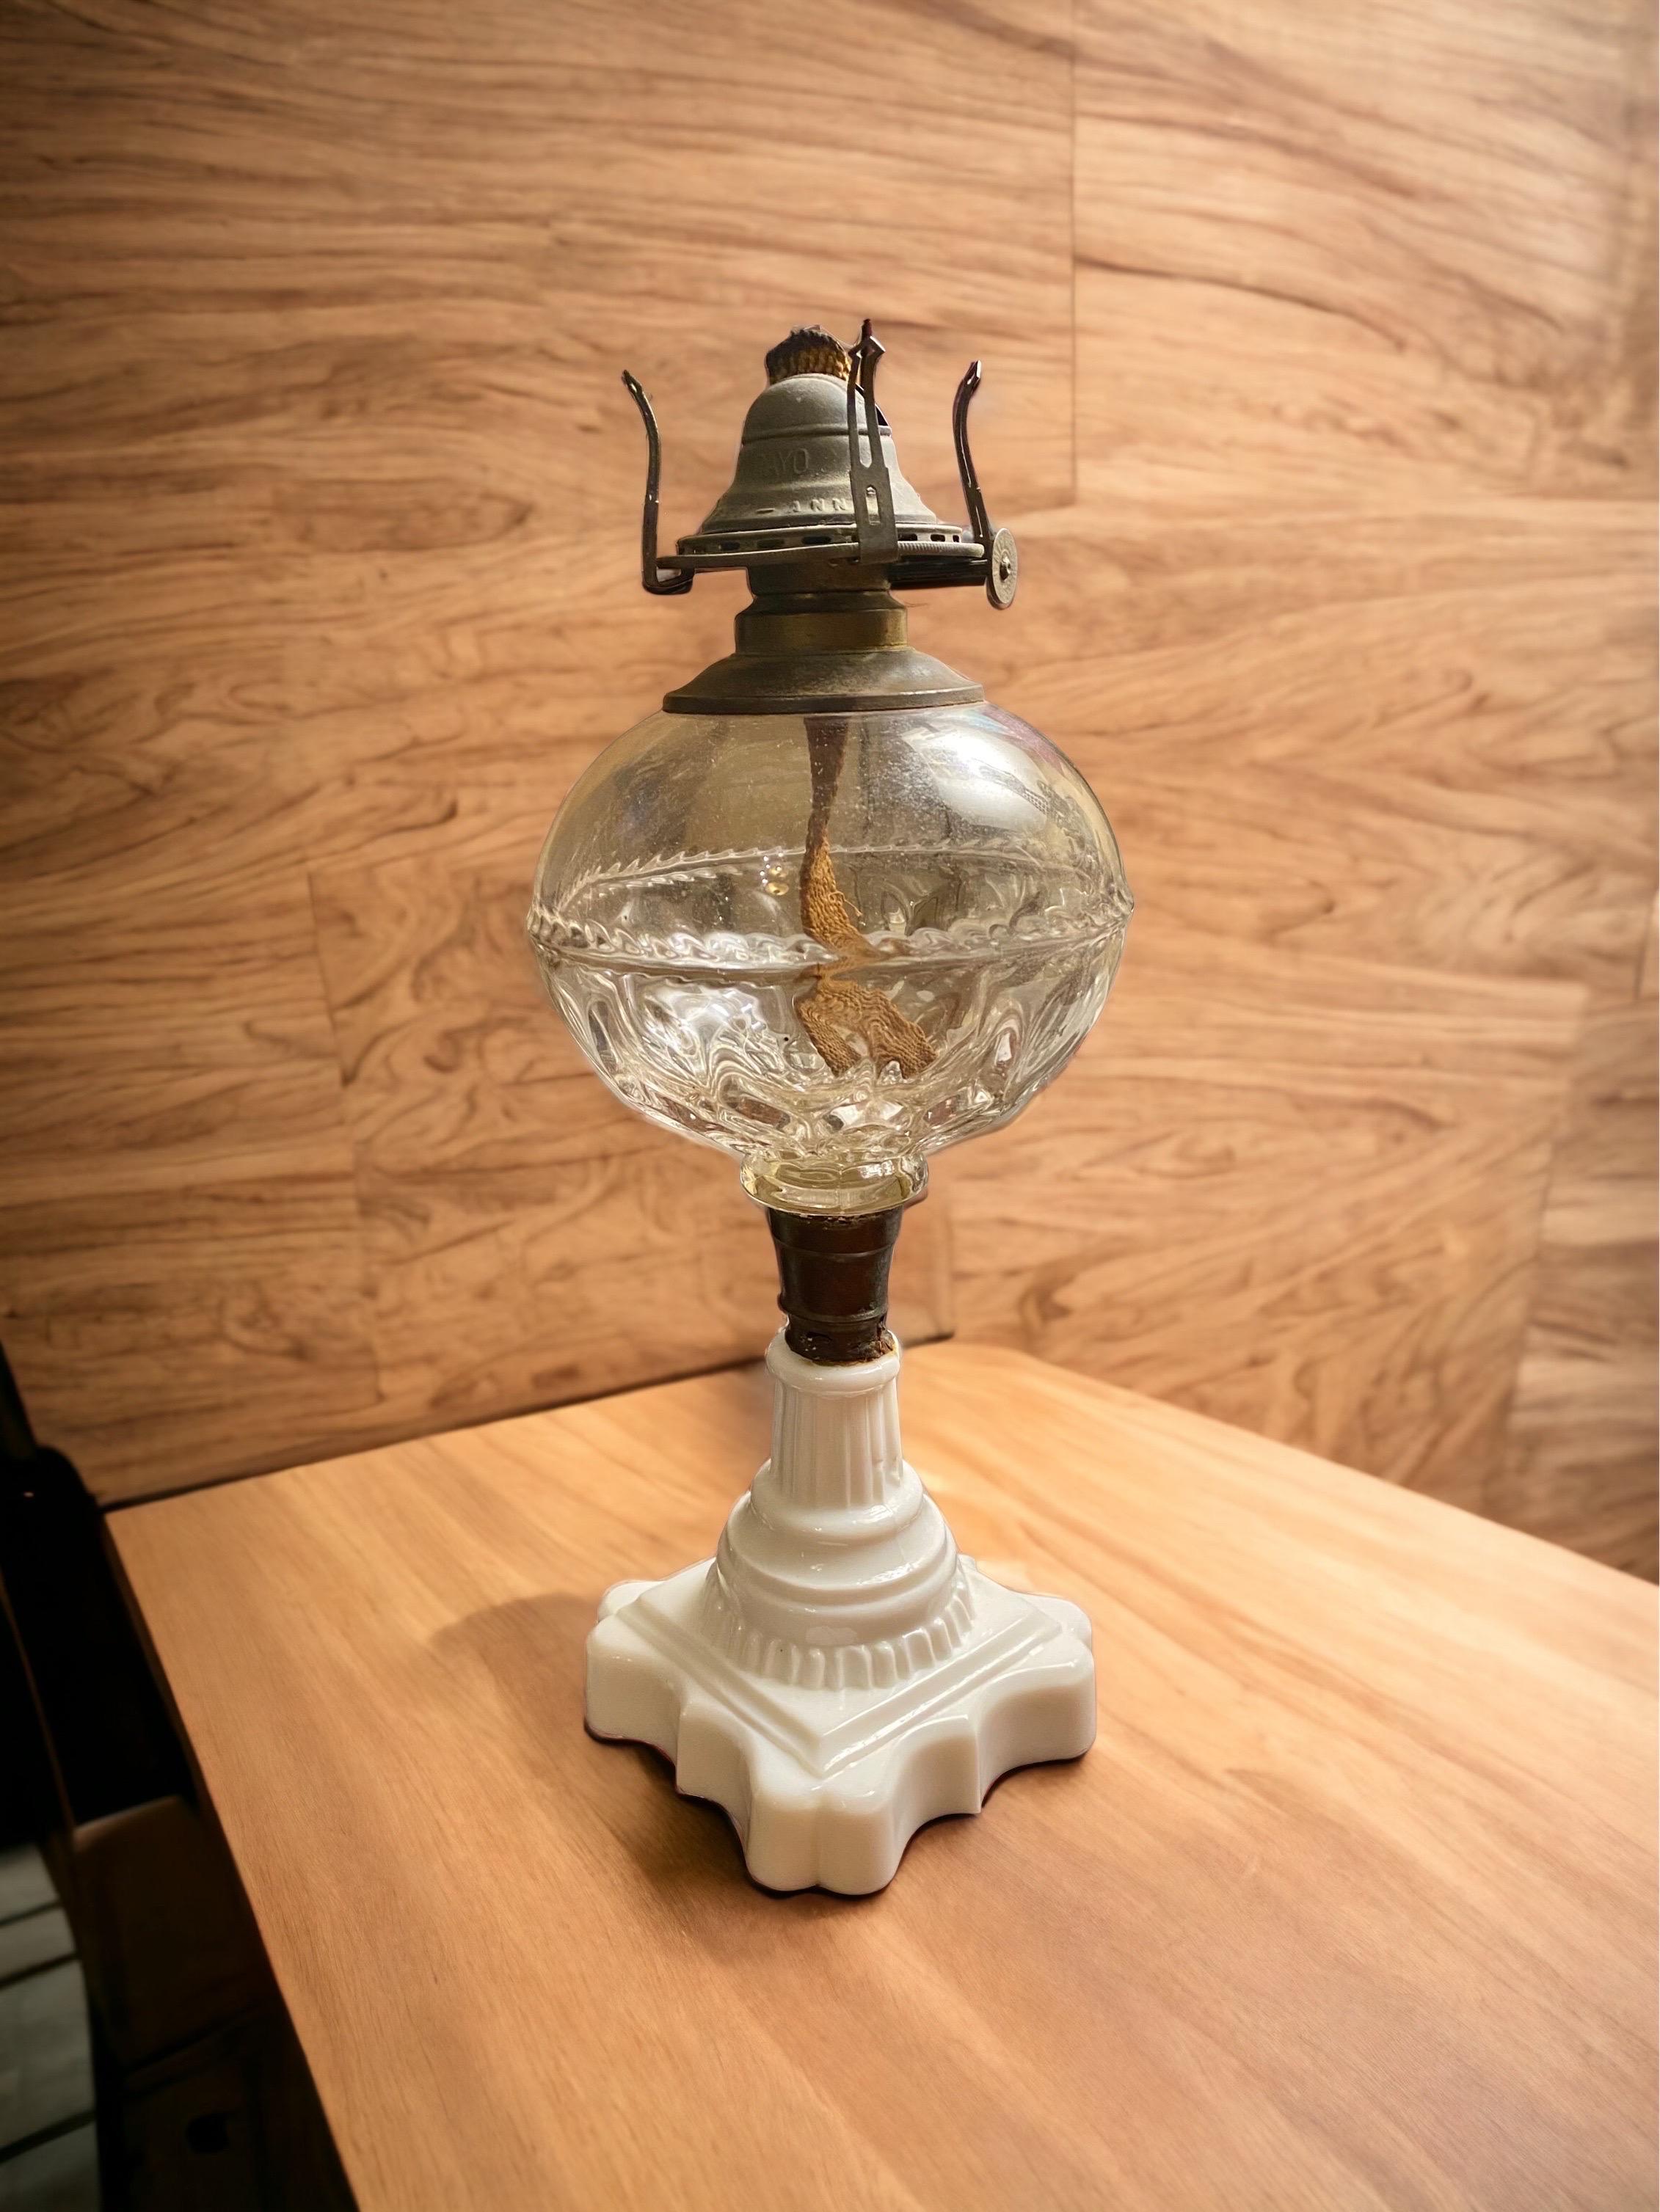 Lampe à huile de baleine américaine du 19e siècle.
Fonte sphérique incolore en verre EAPG, base carrée festonnée à tige effilée en verre Milk blanc opalescent à haute teneur en plomb, connecteur en laiton,
Collier en laiton no 1 à ligne fine.
Équipé